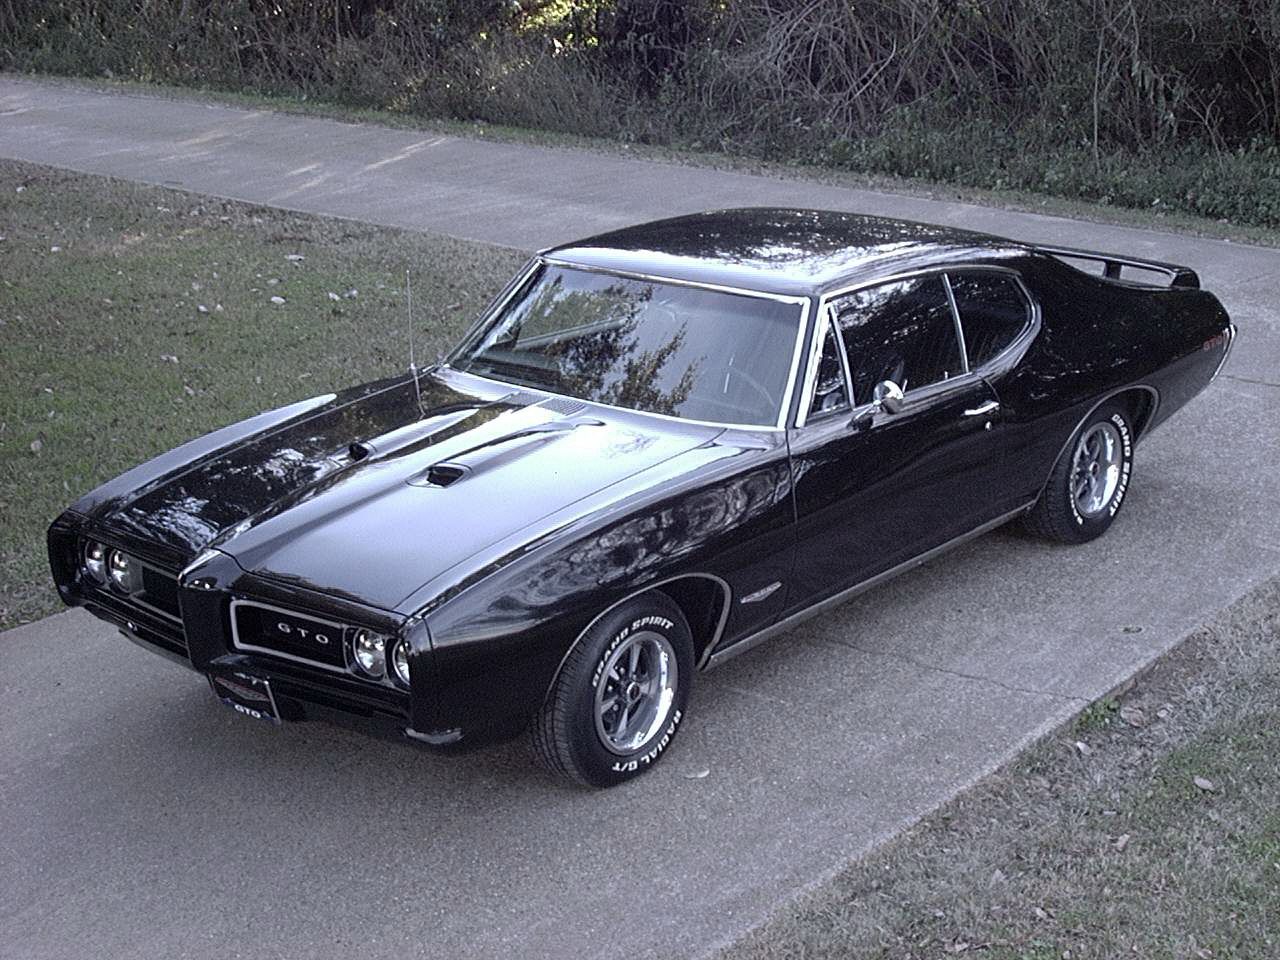 1964 - 2003 Pontiac GTO History